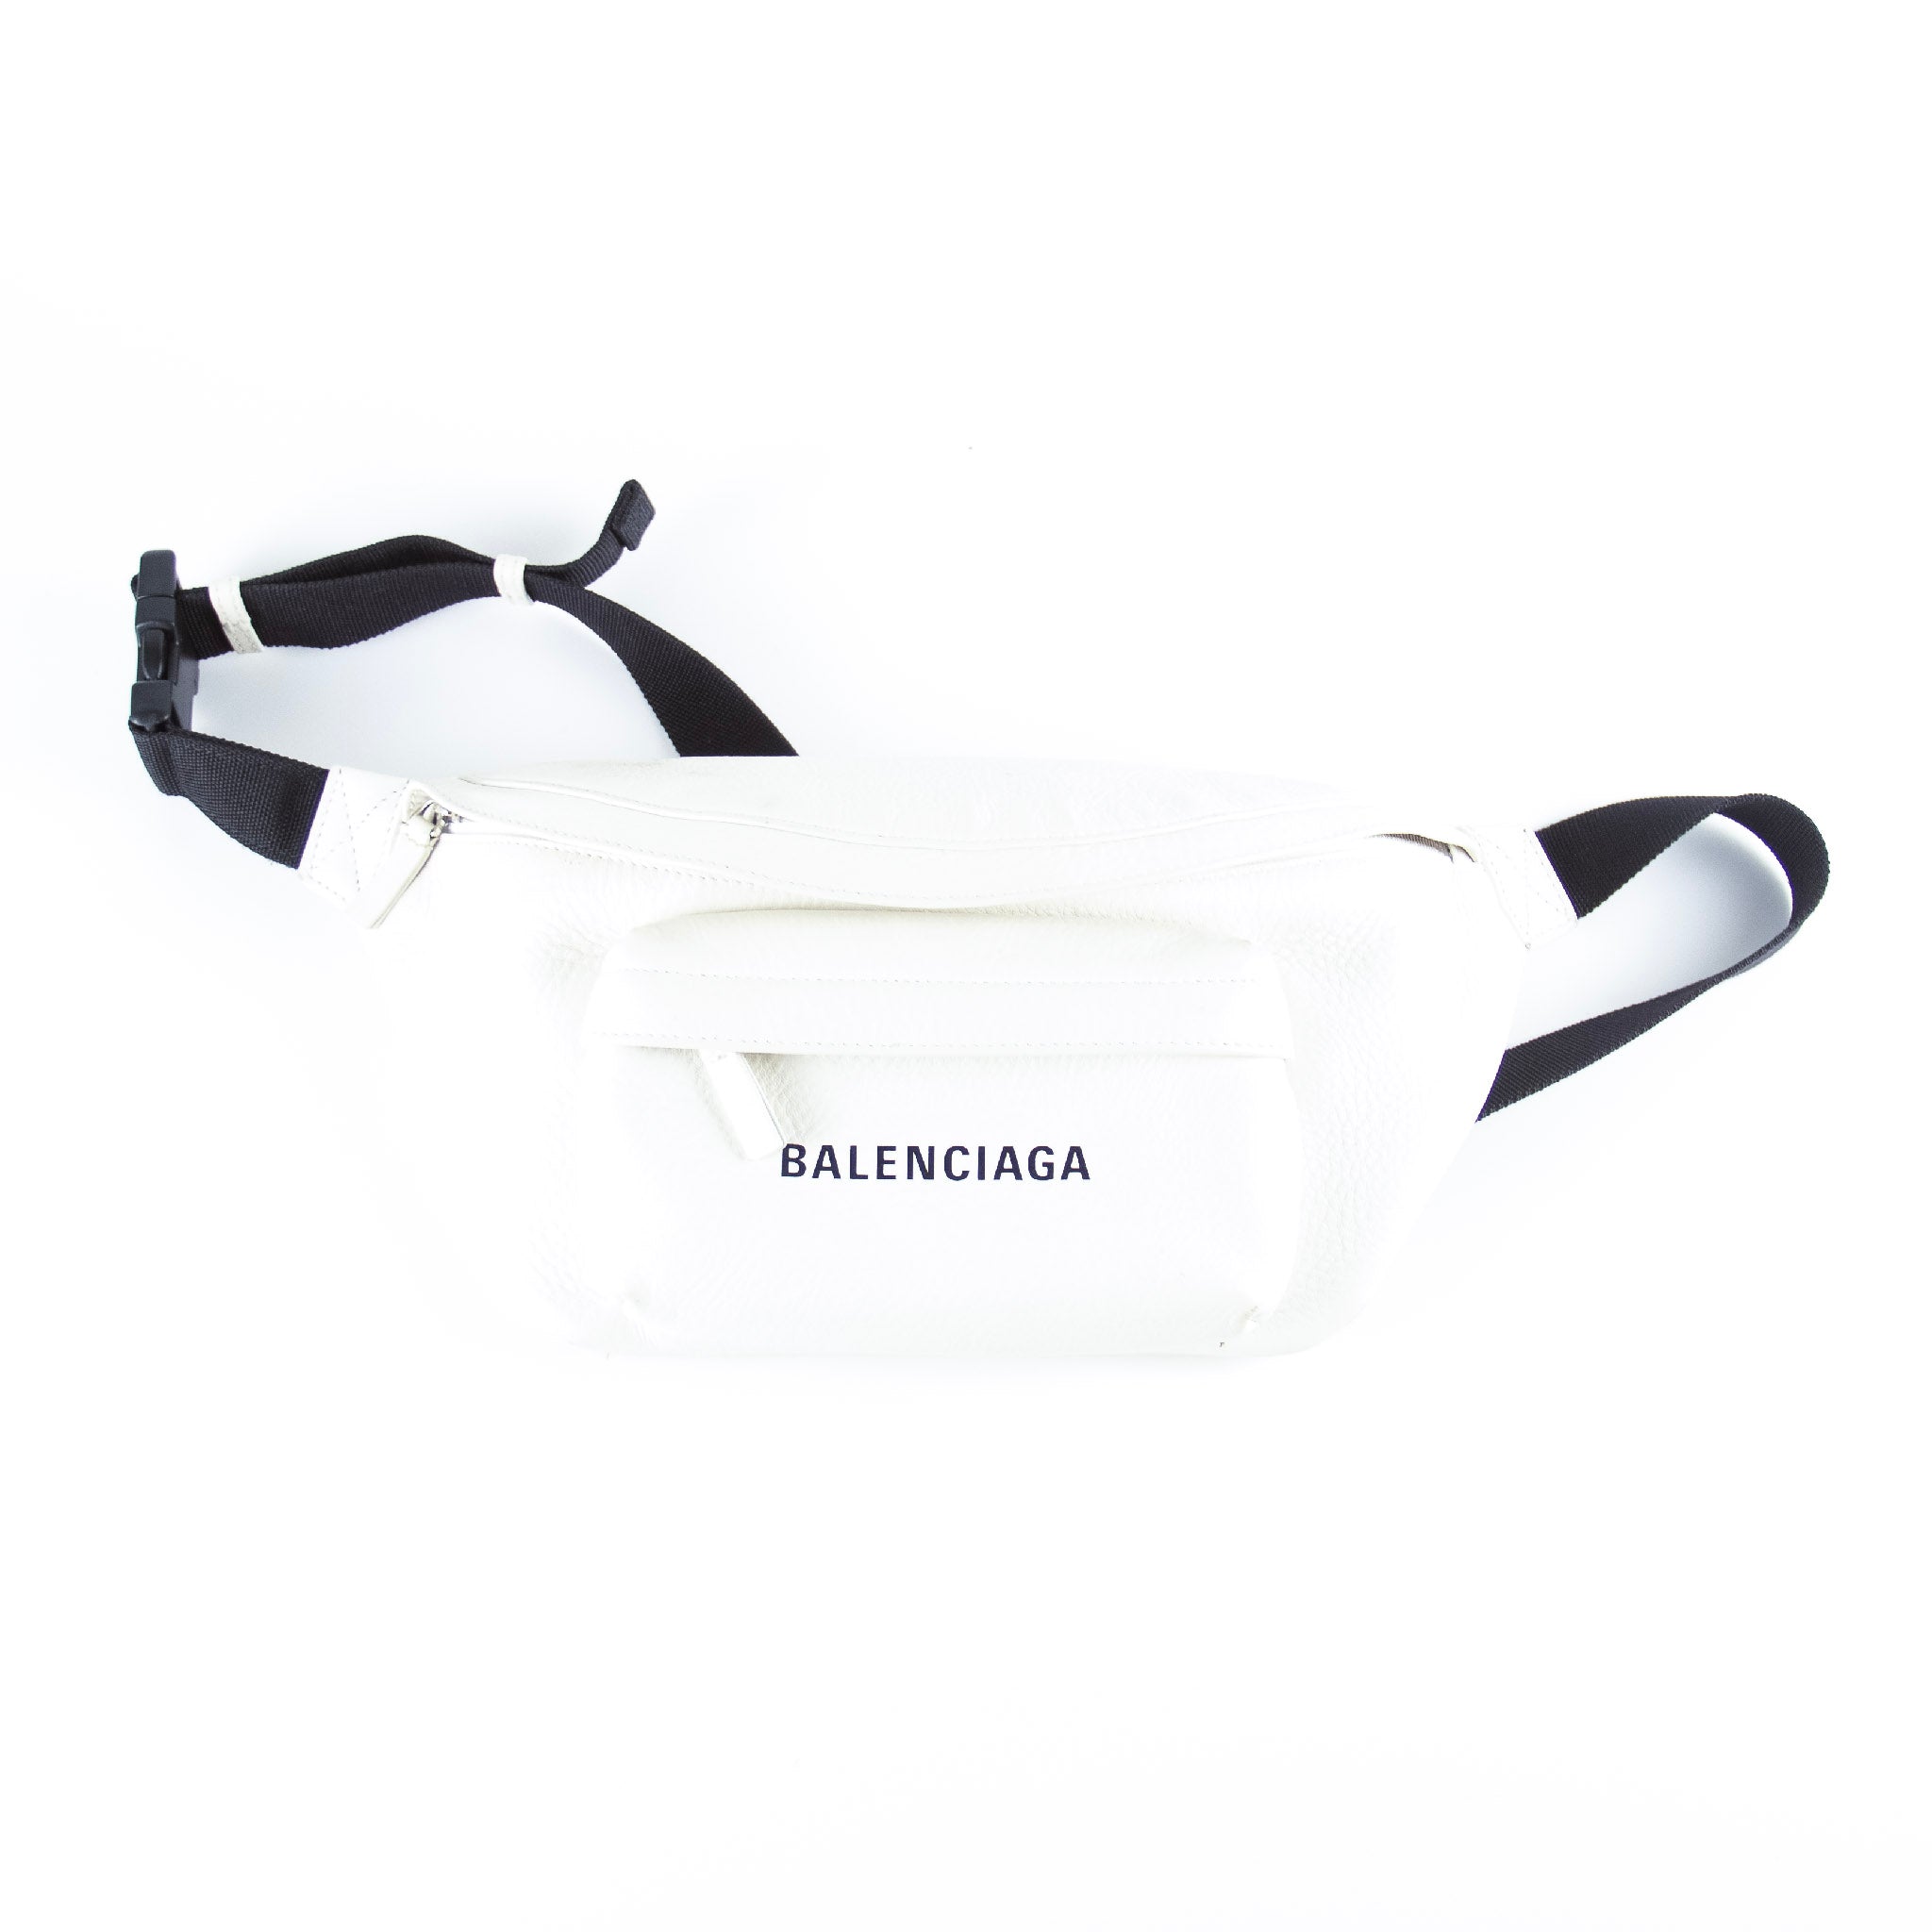 udvikling patient tidsskrift Balenciaga White Everyday Leather Belt Bag – PRELOVED.dk